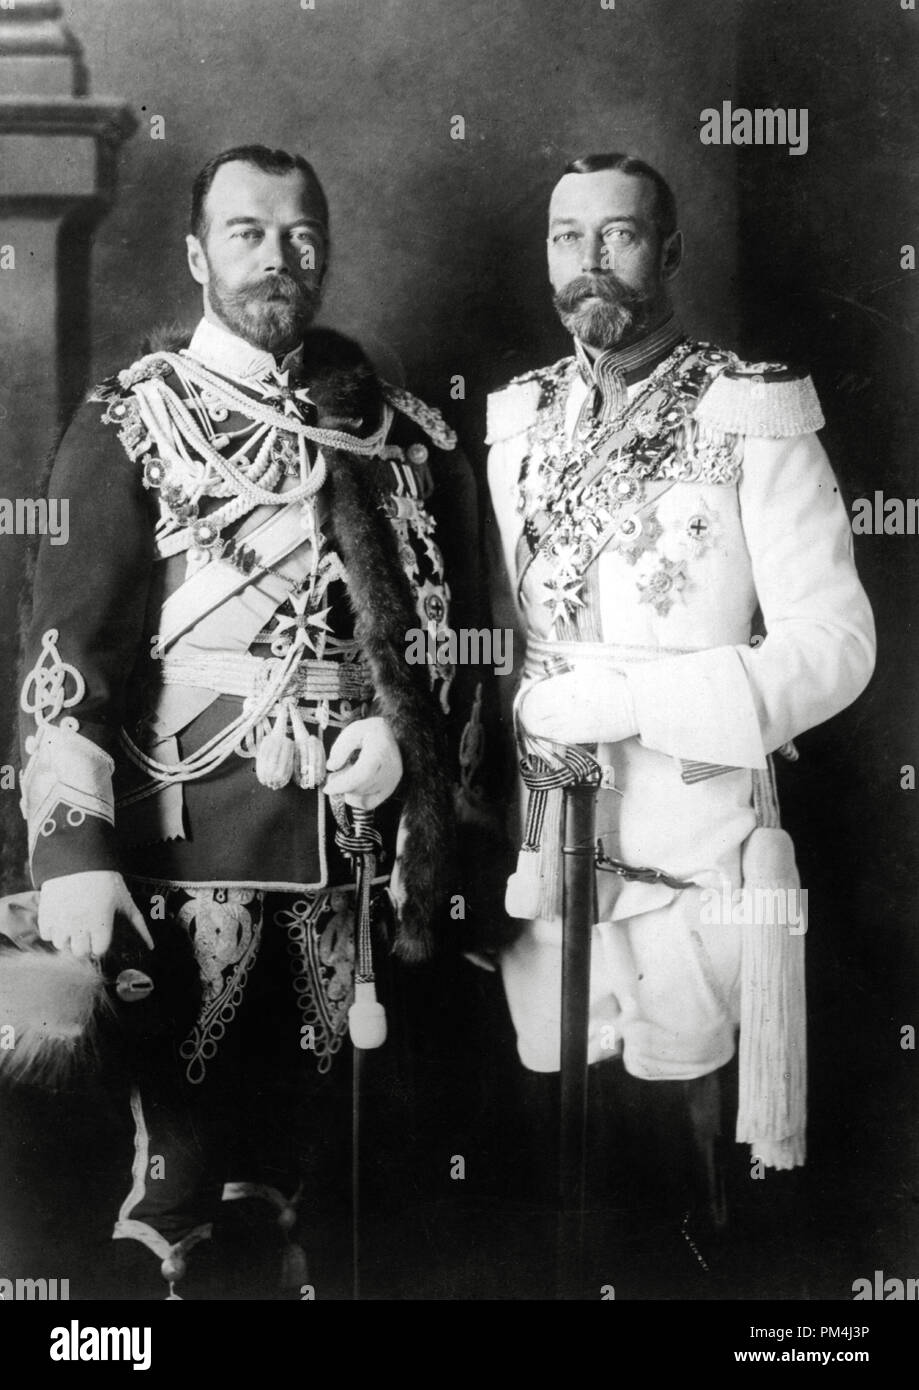 Csar Nicola II di Russia con i suoi fisicamente simile cugino, Re Giorgio V del Regno Unito (a destra), in tedesco uniformi militari a Berlino prima della guerra, 1913 Riferimento File # 1003 500THA Foto Stock